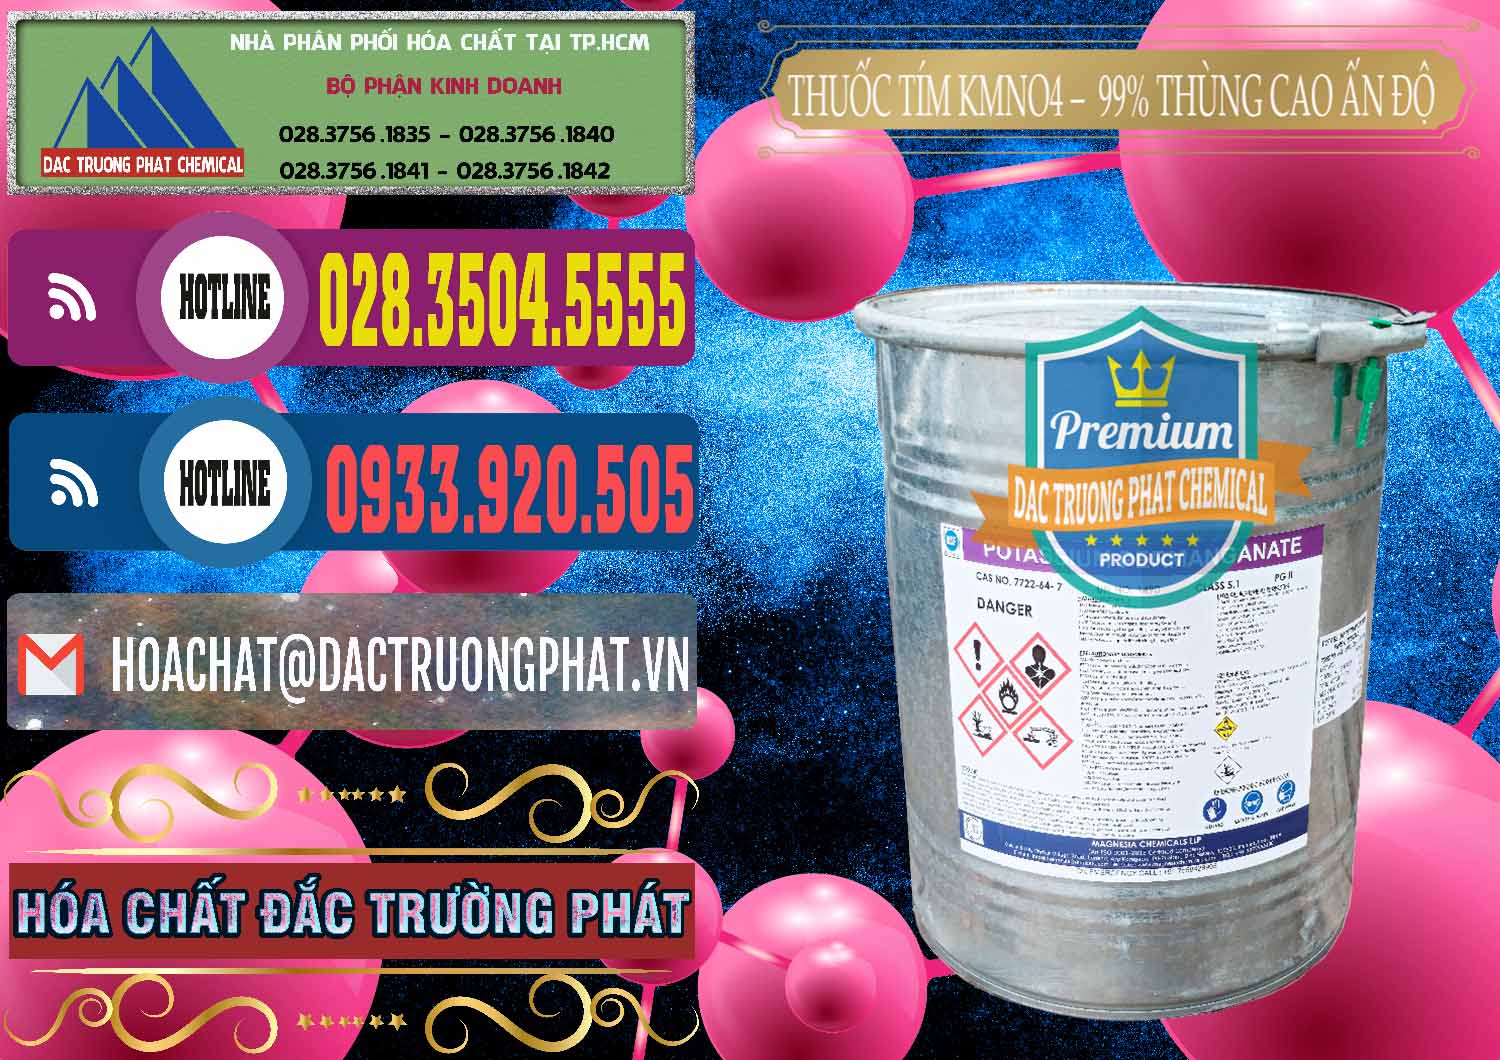 Đơn vị kinh doanh và bán Thuốc Tím - KMNO4 Thùng Cao 99% Magnesia Chemicals Ấn Độ India - 0164 - Cty chuyên phân phối và kinh doanh hóa chất tại TP.HCM - muabanhoachat.com.vn